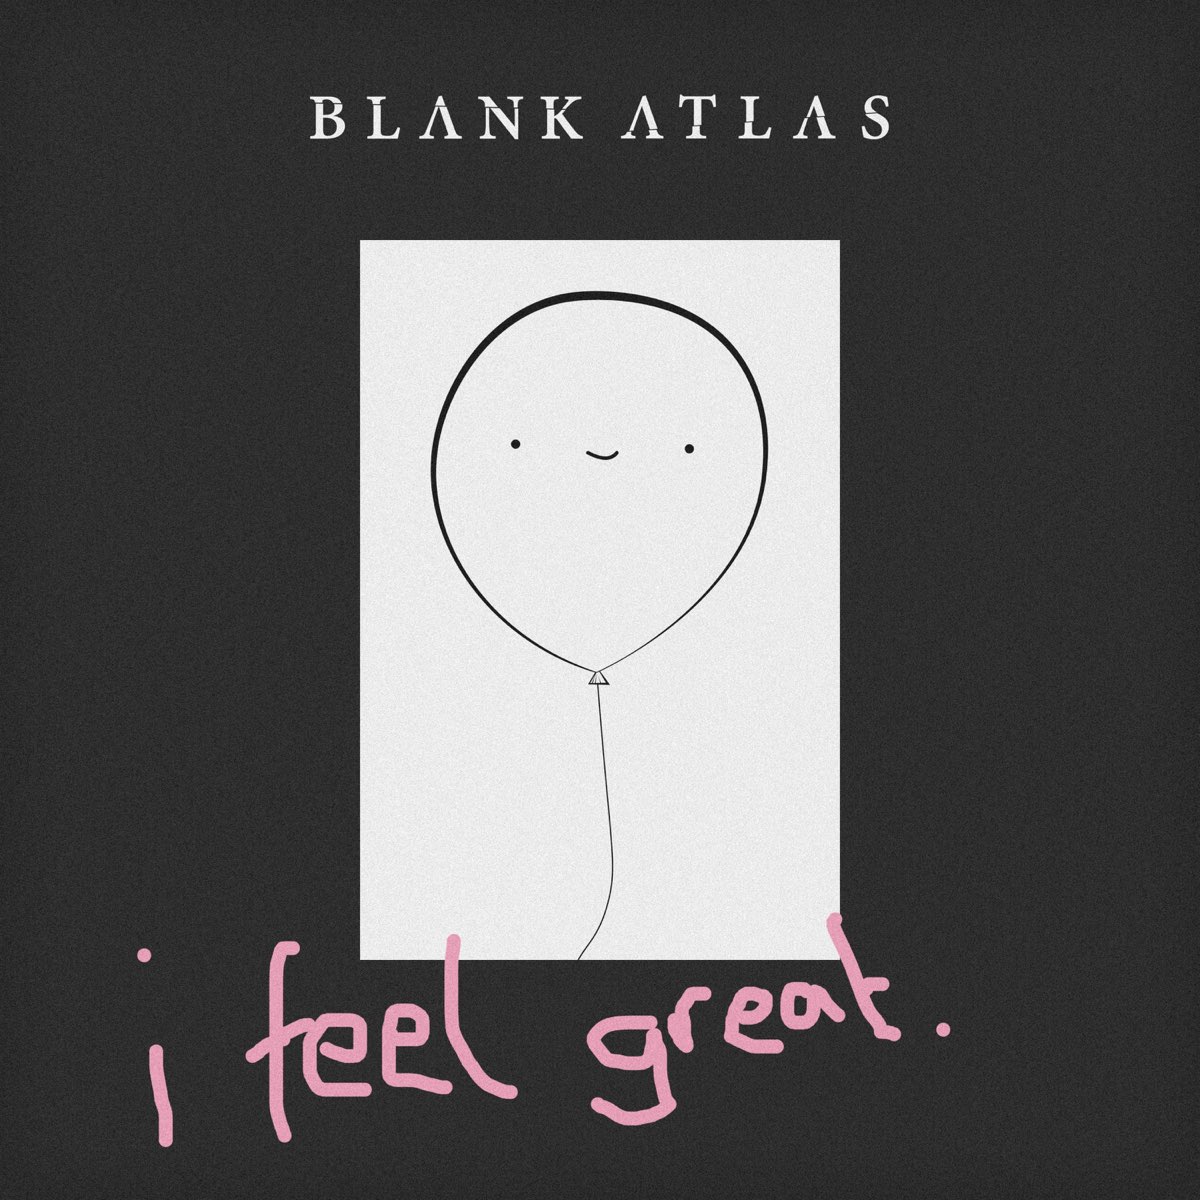 Blank Atlas. I feel great. It made us feel